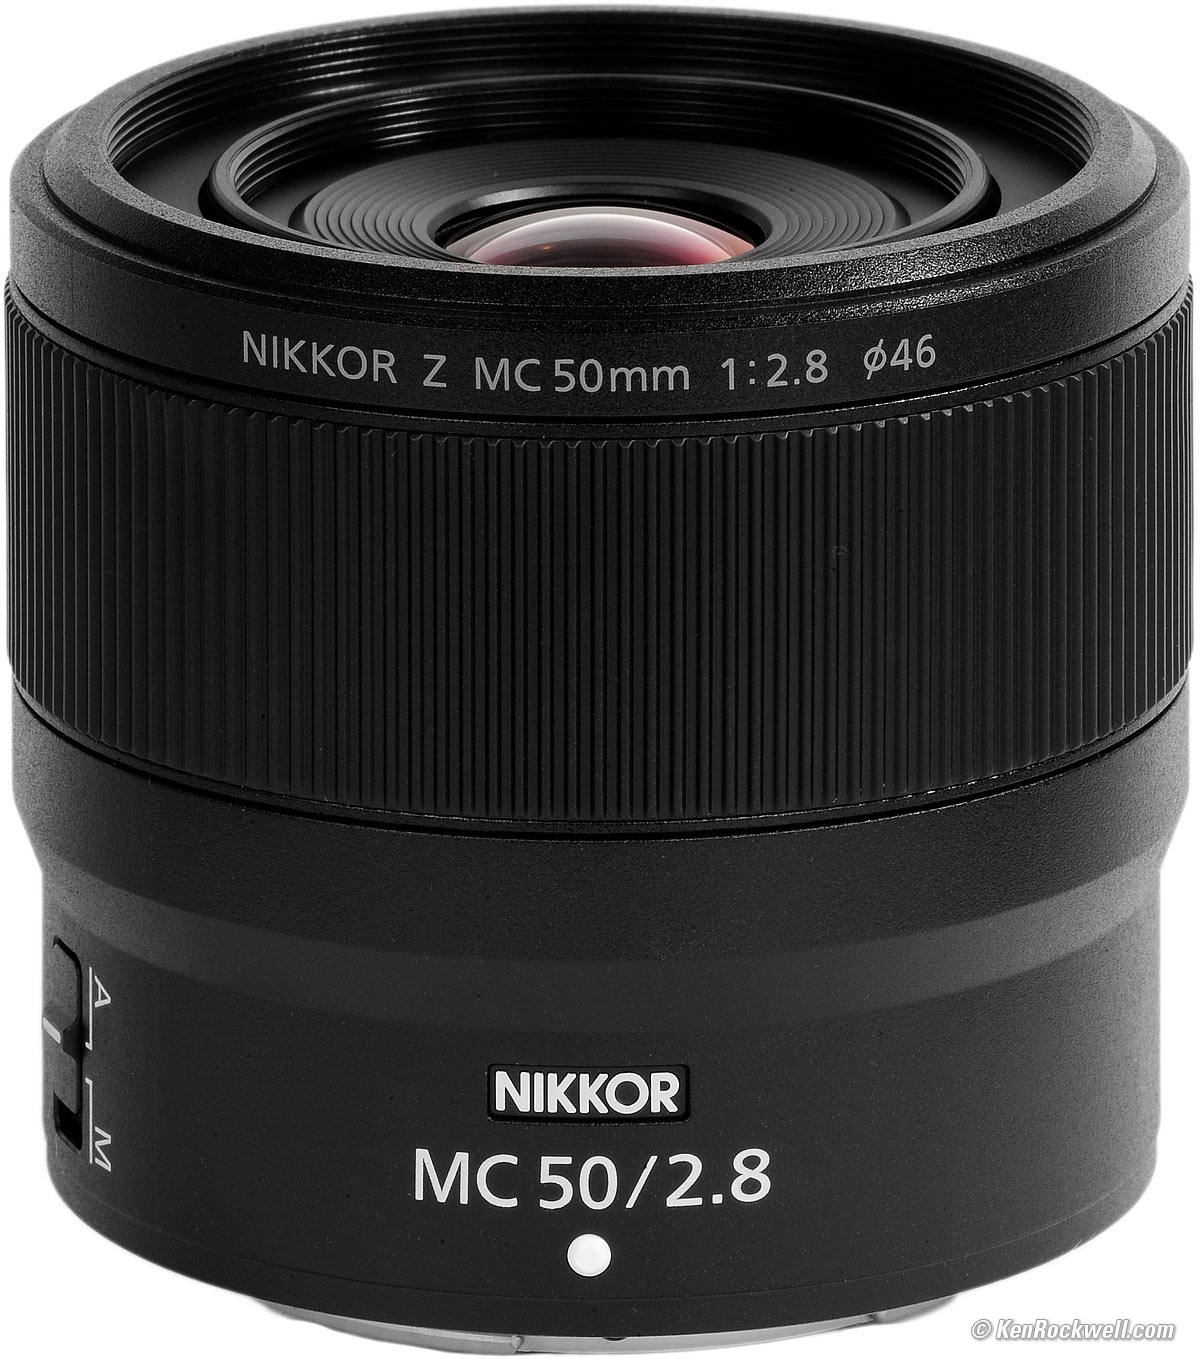 Nikon Z 50mm f/2.8 MC Macro Review